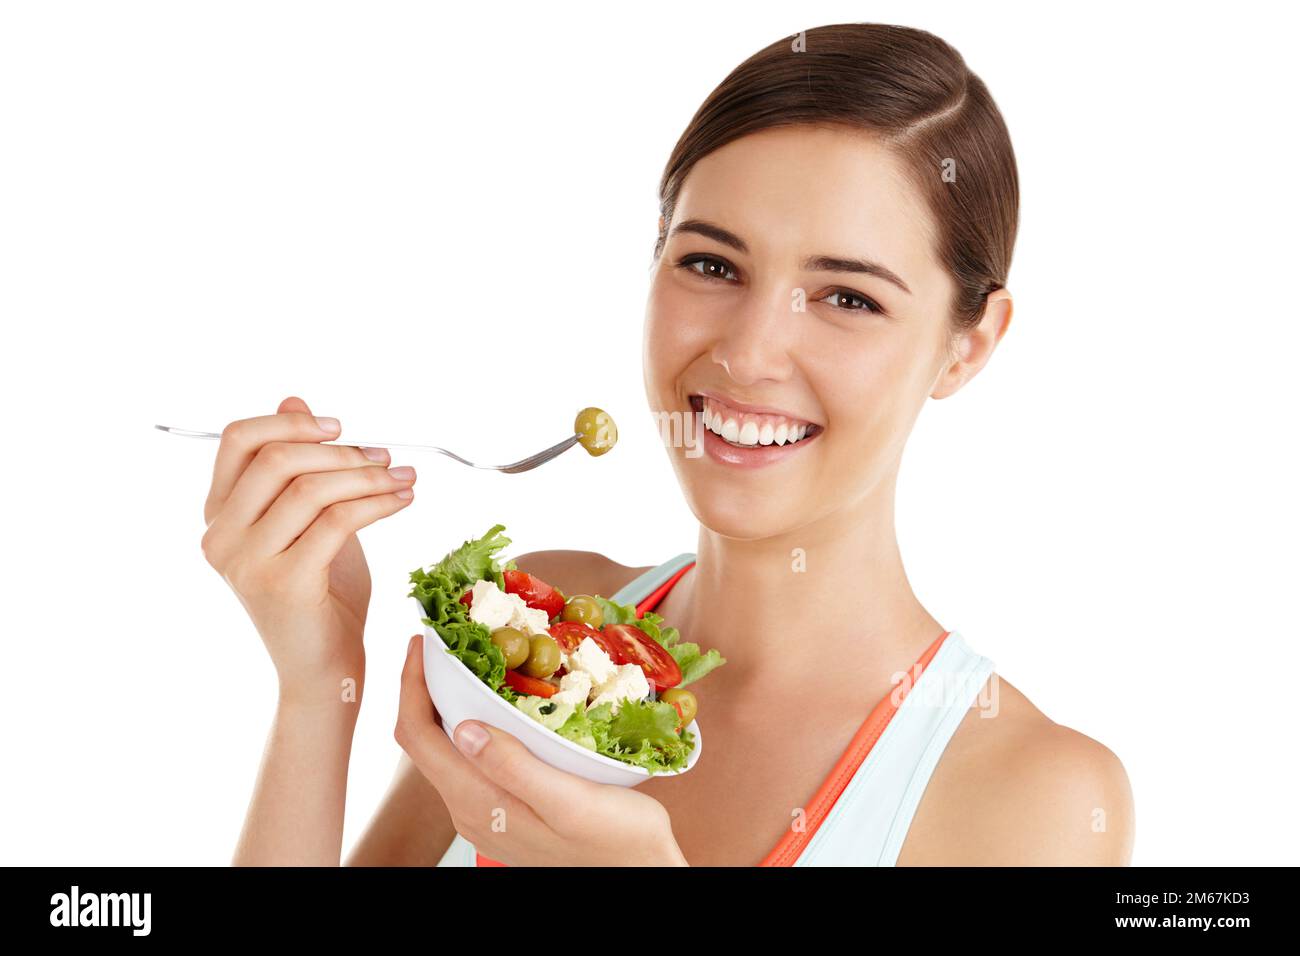 Ce que vous mangez en privé, vous portez en public. Femme sur fond blanc prête à manger de la salade. Banque D'Images